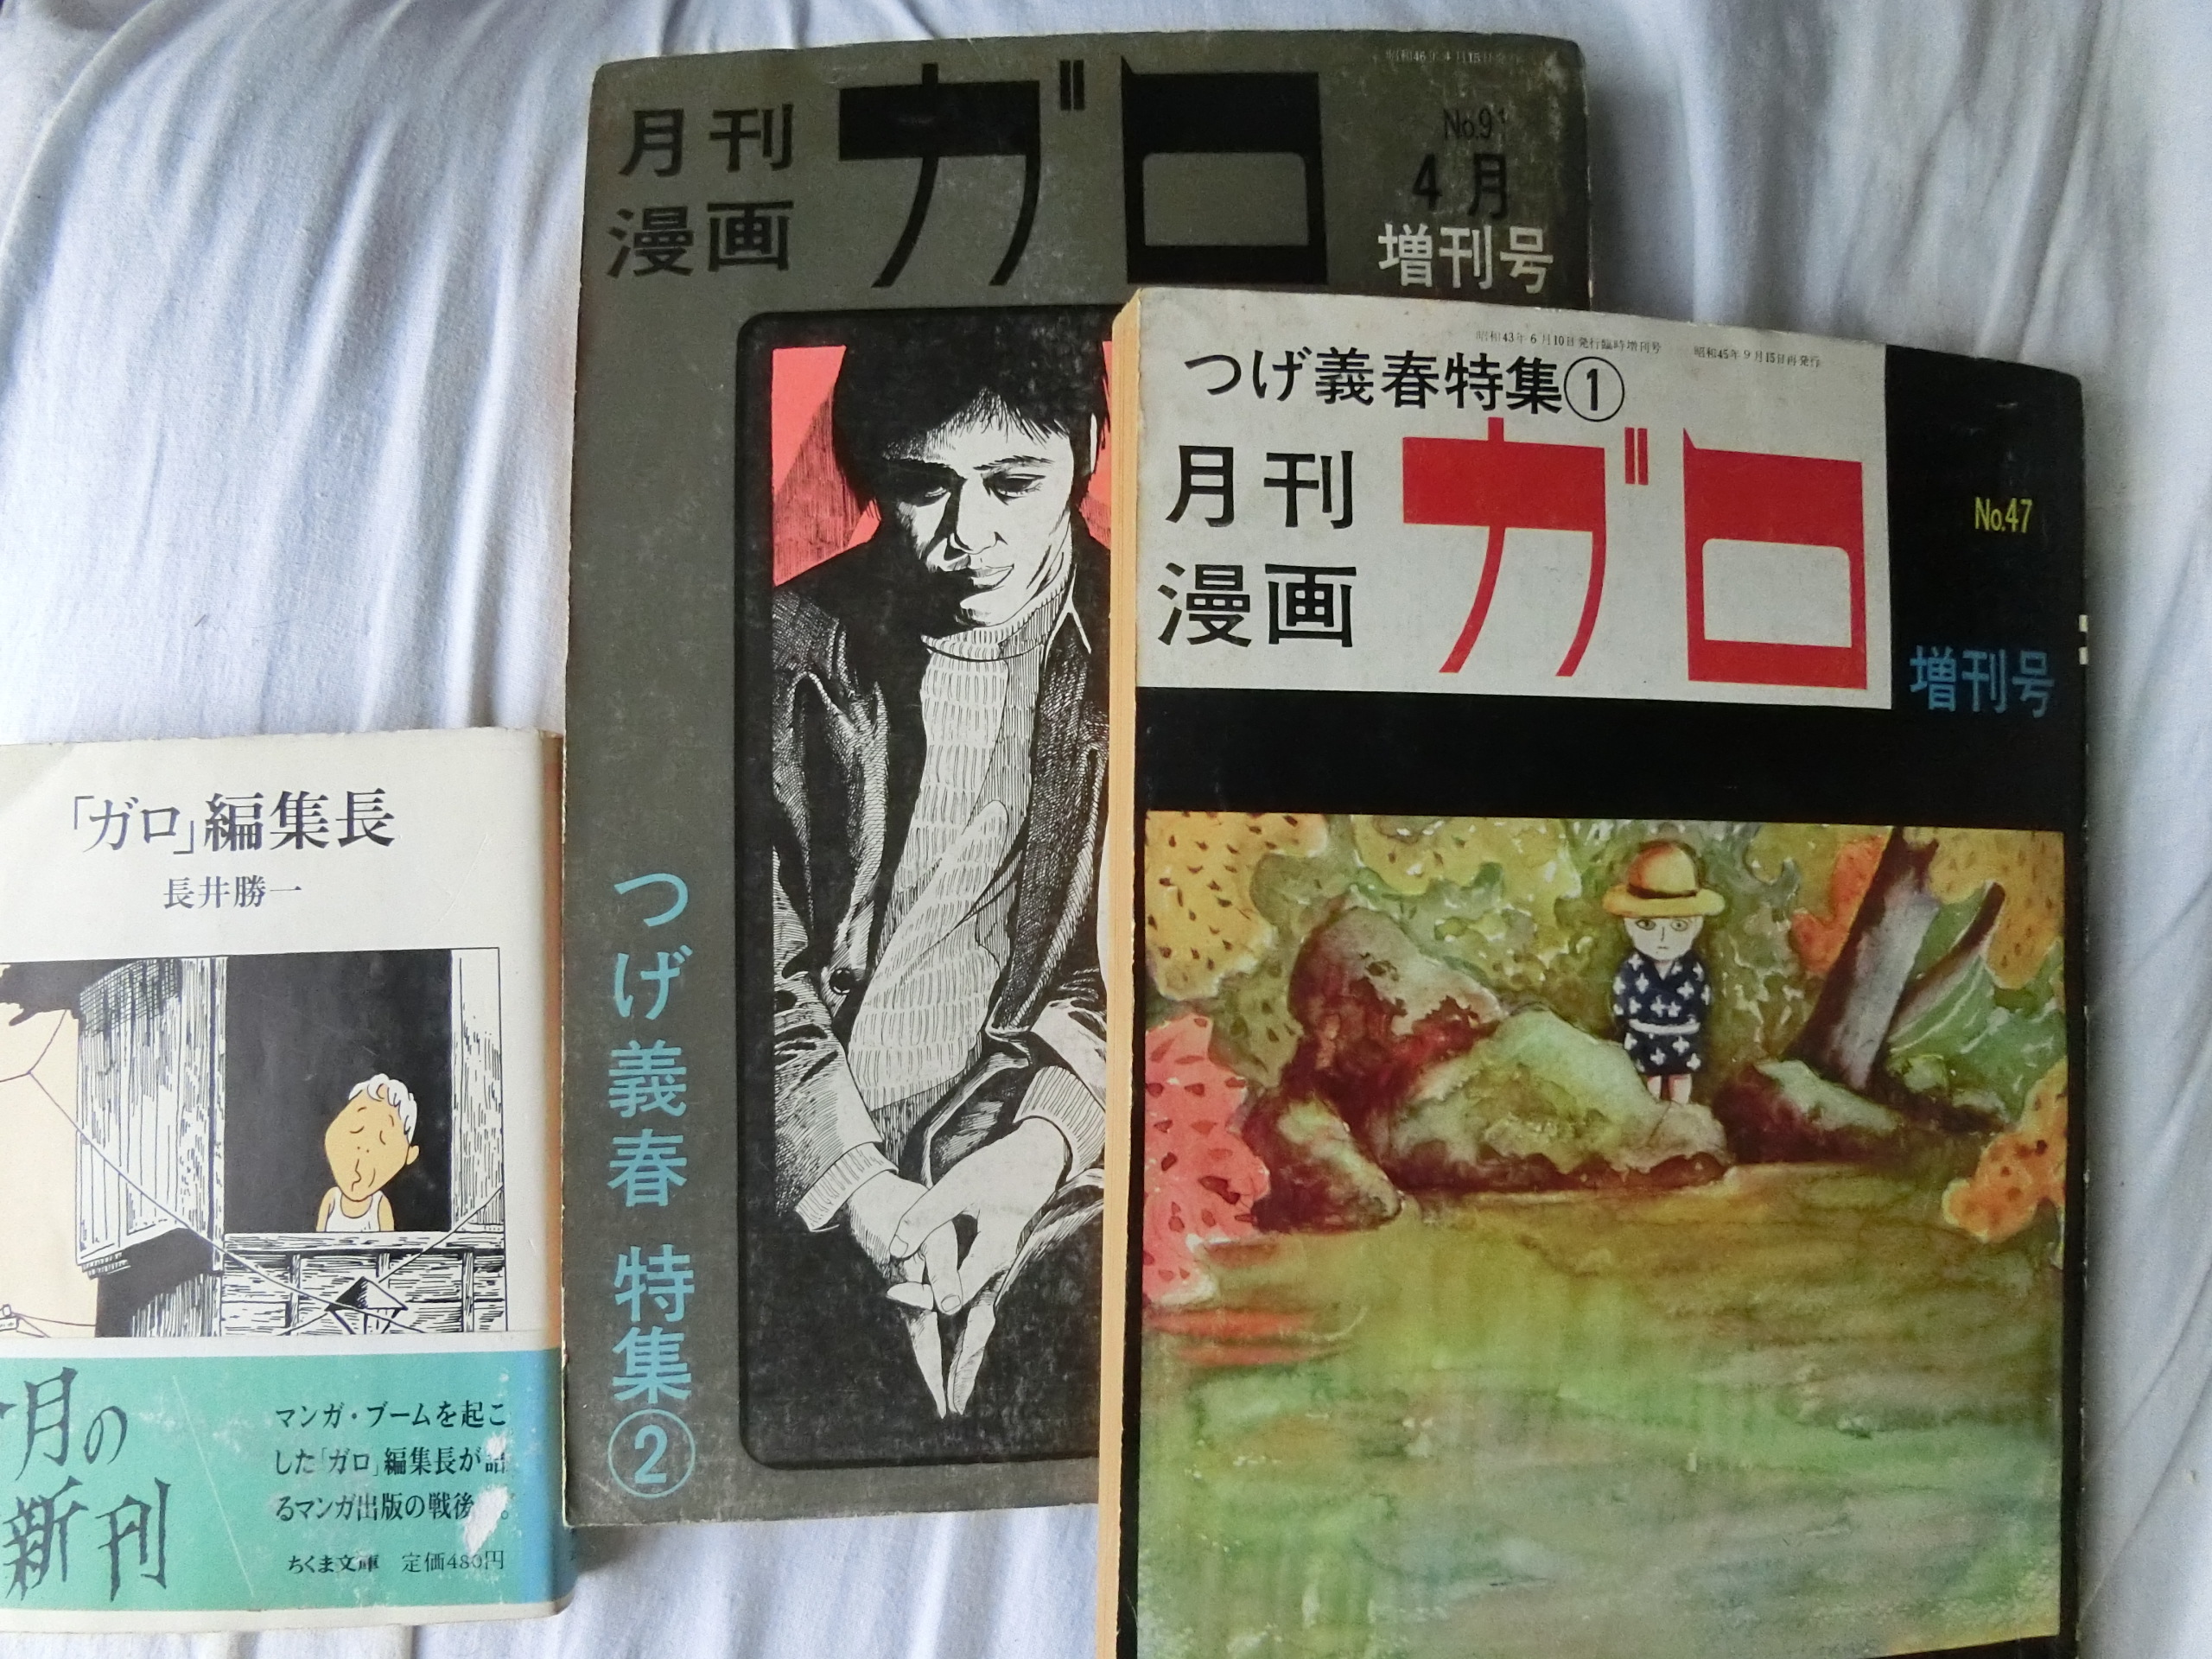 月刊漫画ガロ 臨時増刊号 つげ義春特集 1971 セット 47 91 青林堂 